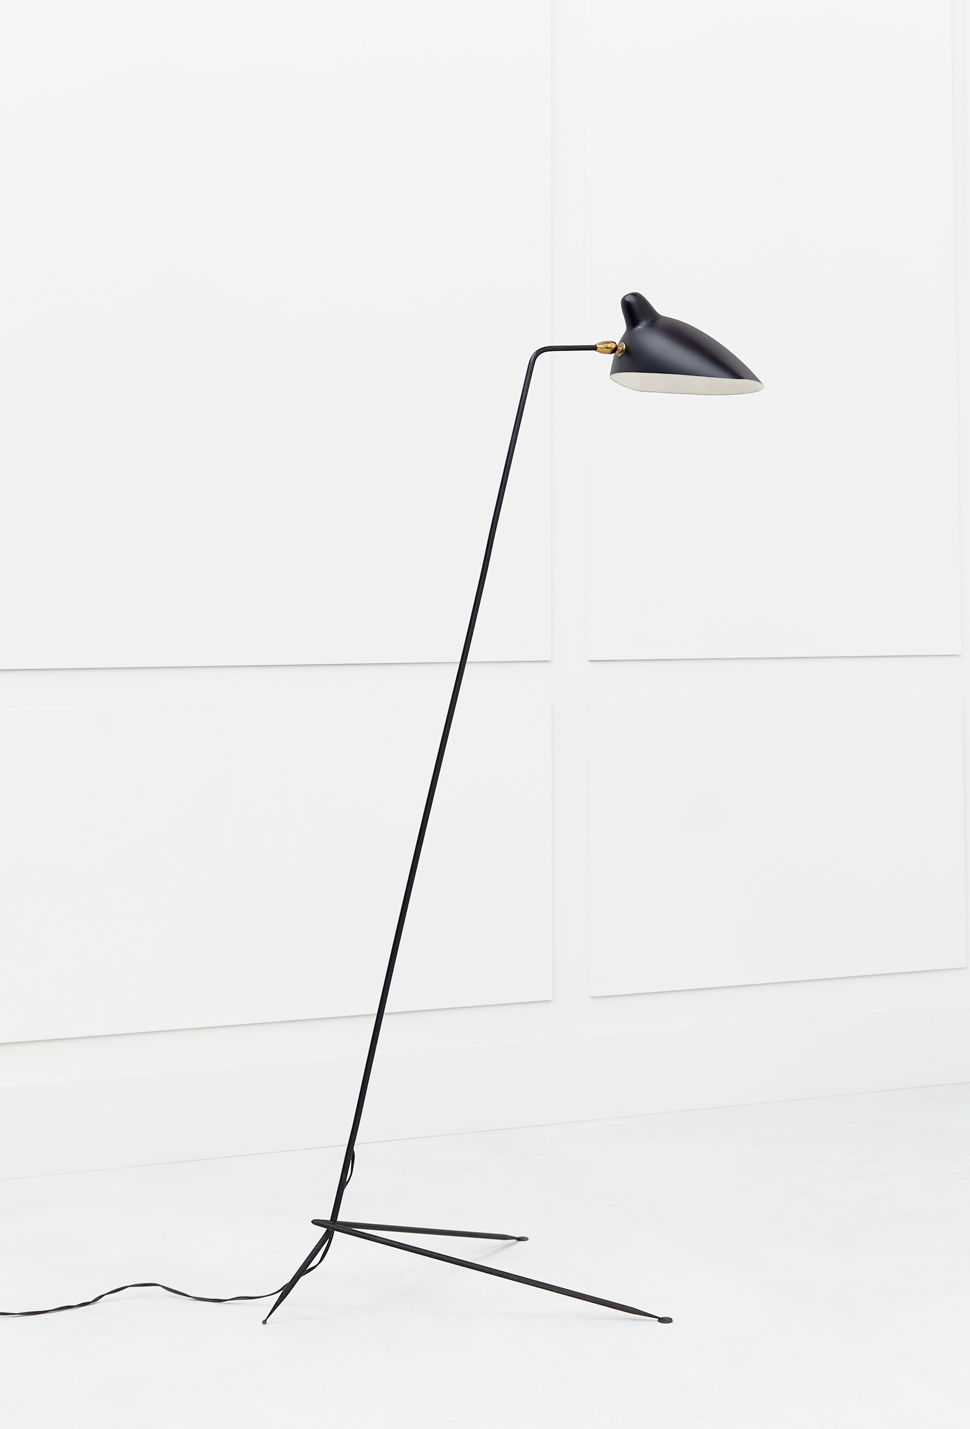 Serge Mouille, Simple floor lamp, vue 02